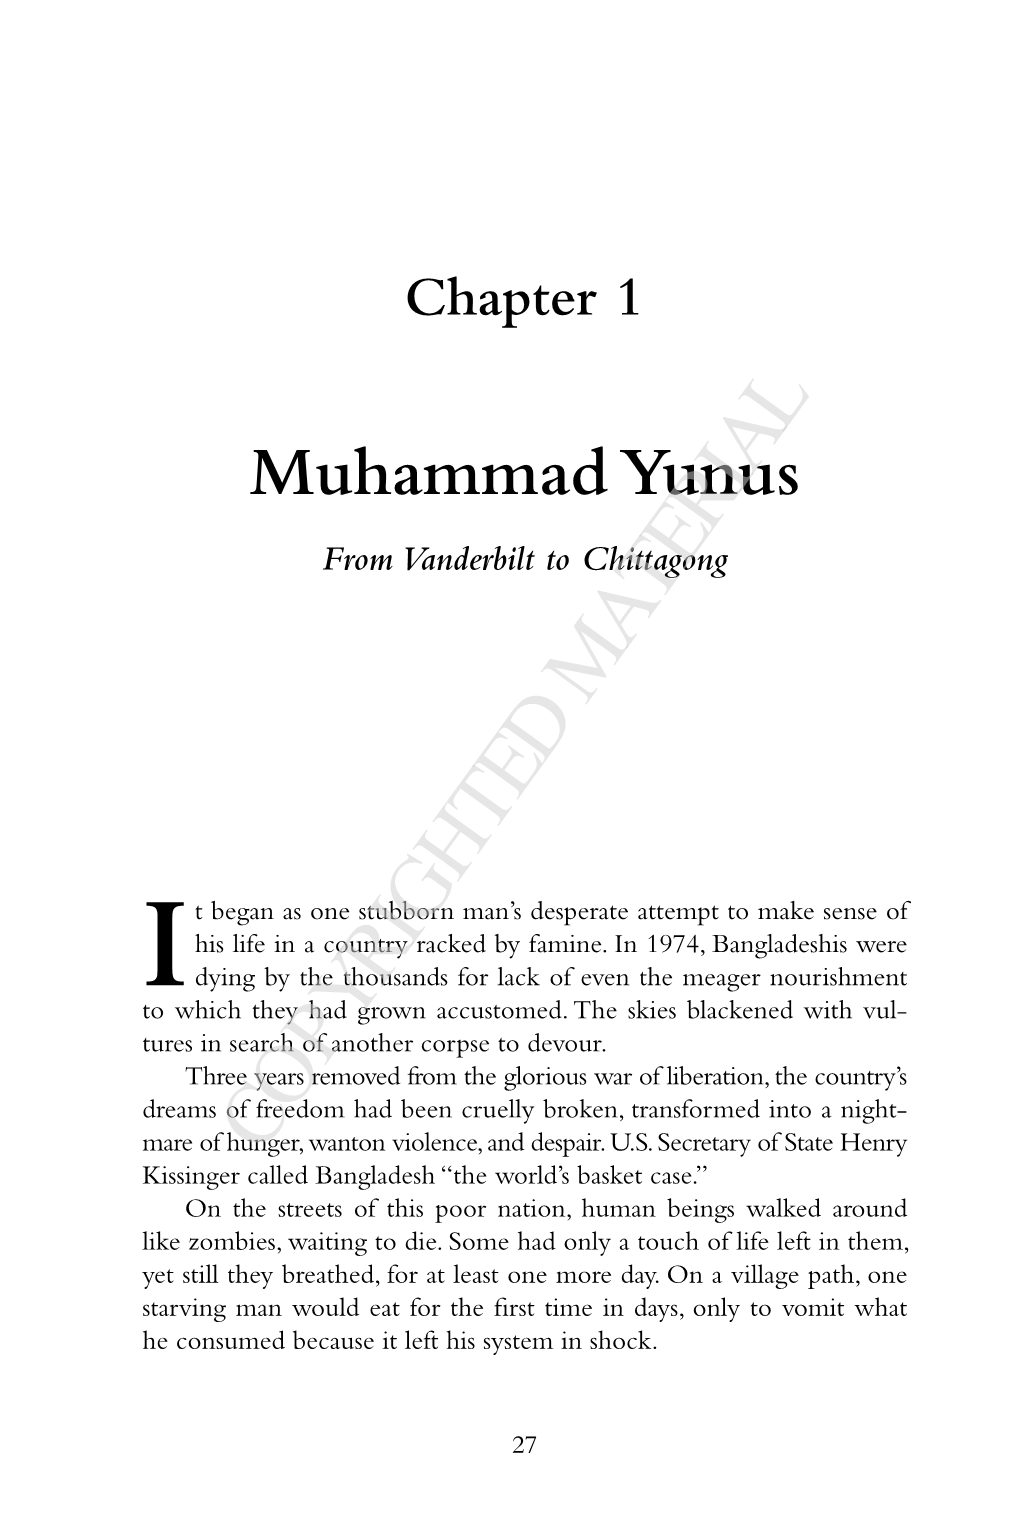 Muhammad Yunus from Vanderbilt to Chittagong